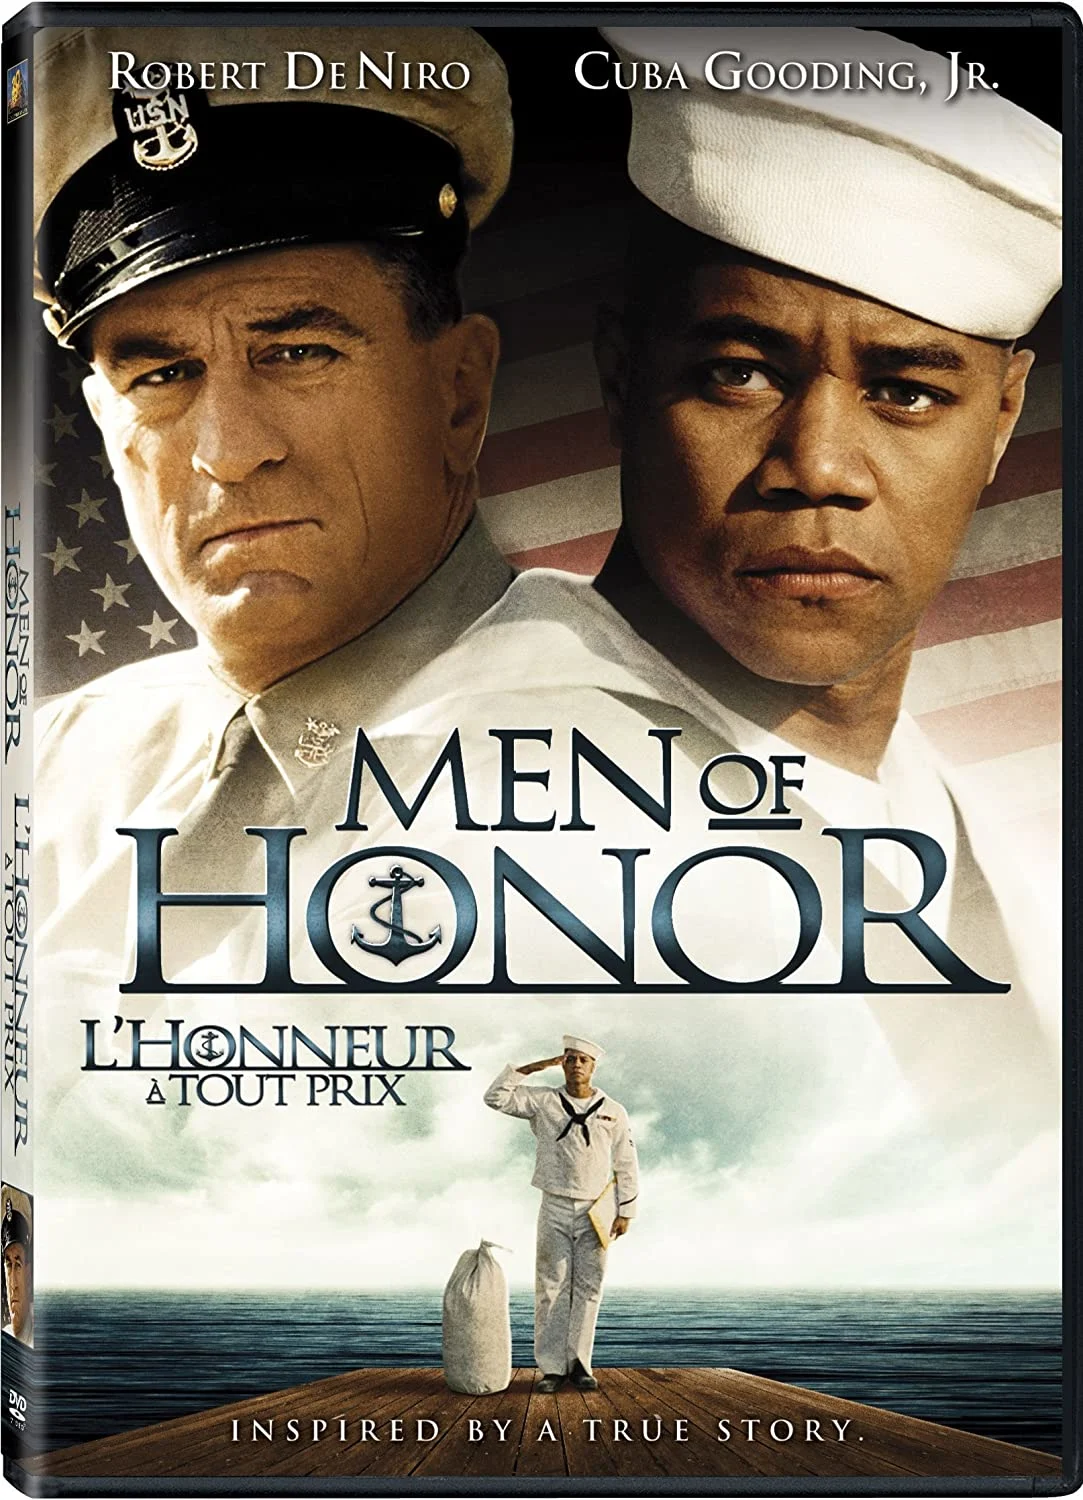 Men of Honor (DVD) on MovieShack